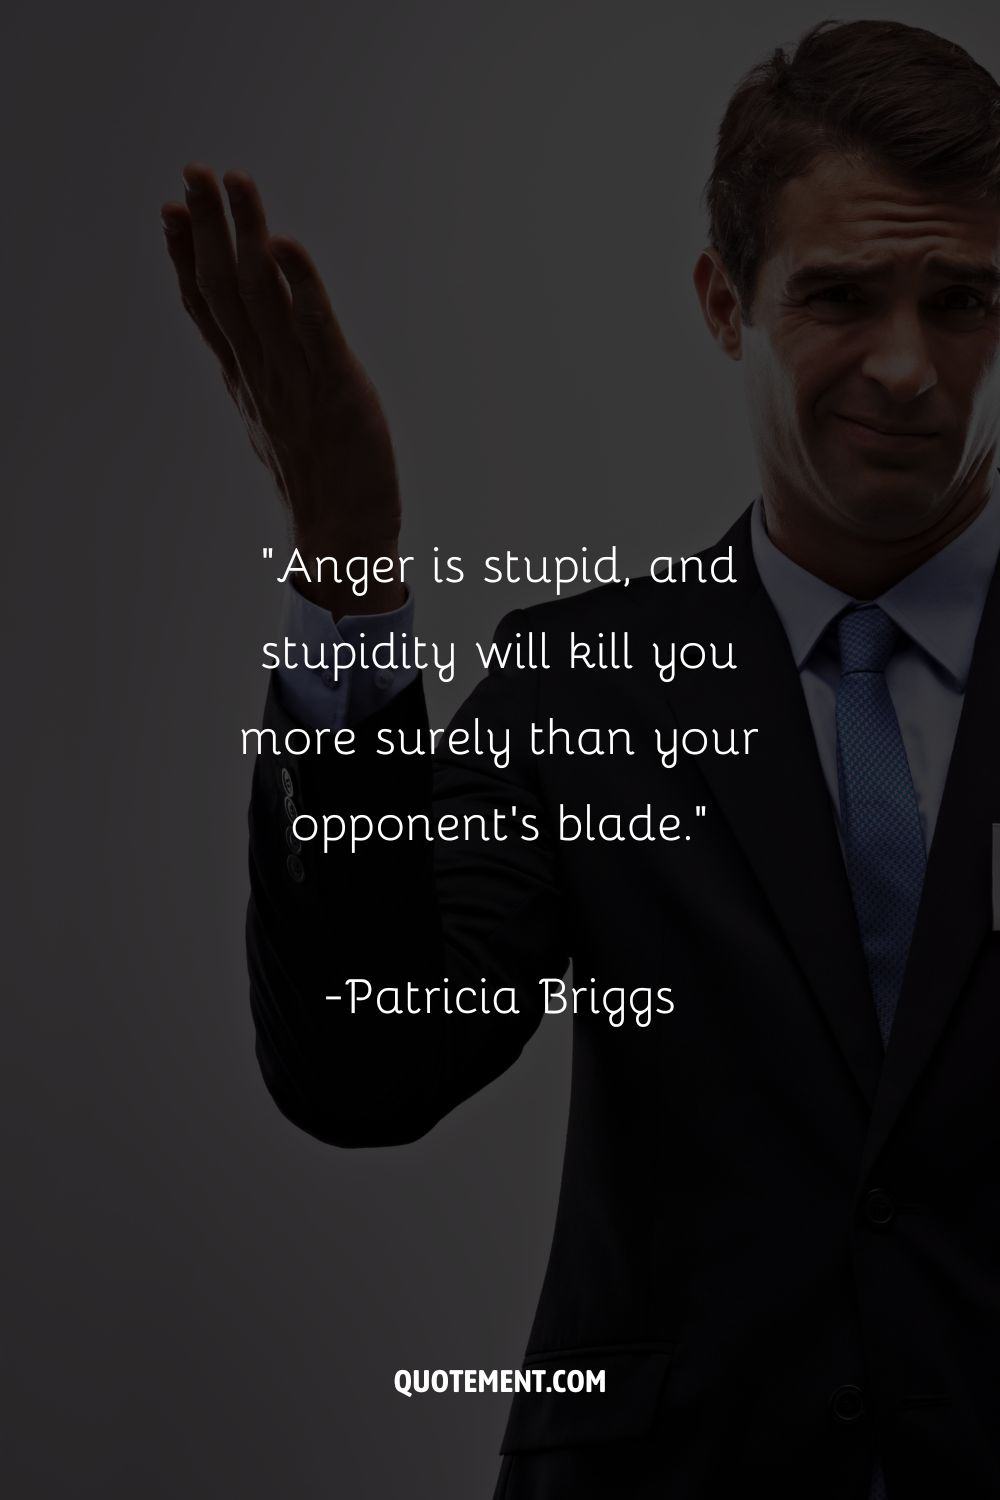 "La ira es estúpida, y la estupidez te matará con más seguridad que la espada de tu oponente".